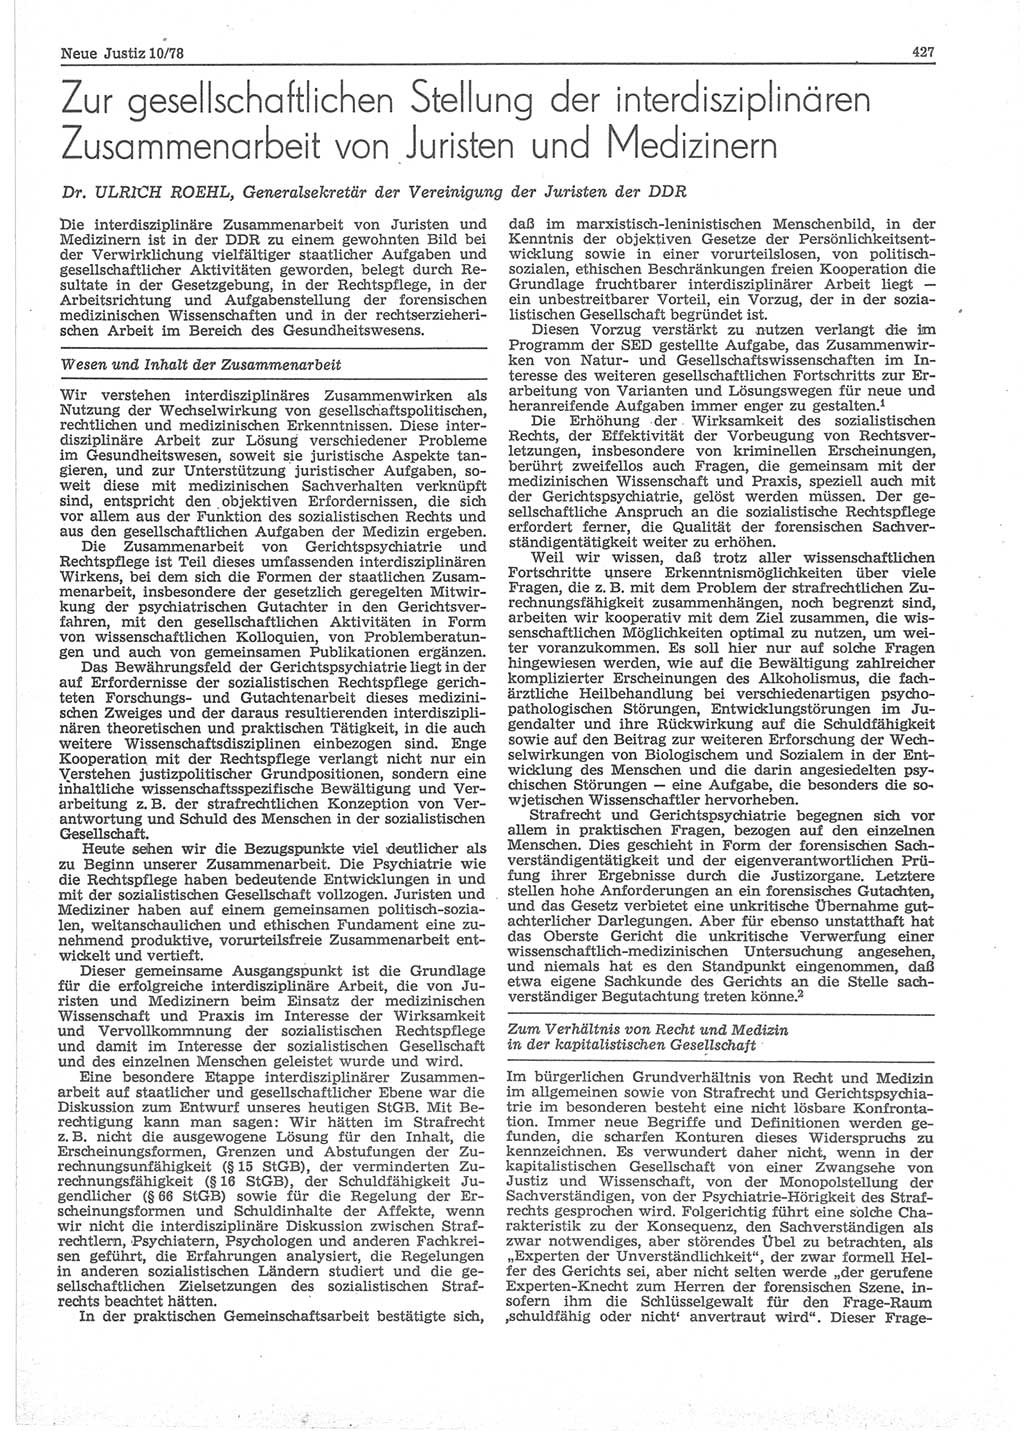 Neue Justiz (NJ), Zeitschrift für sozialistisches Recht und Gesetzlichkeit [Deutsche Demokratische Republik (DDR)], 32. Jahrgang 1978, Seite 427 (NJ DDR 1978, S. 427)